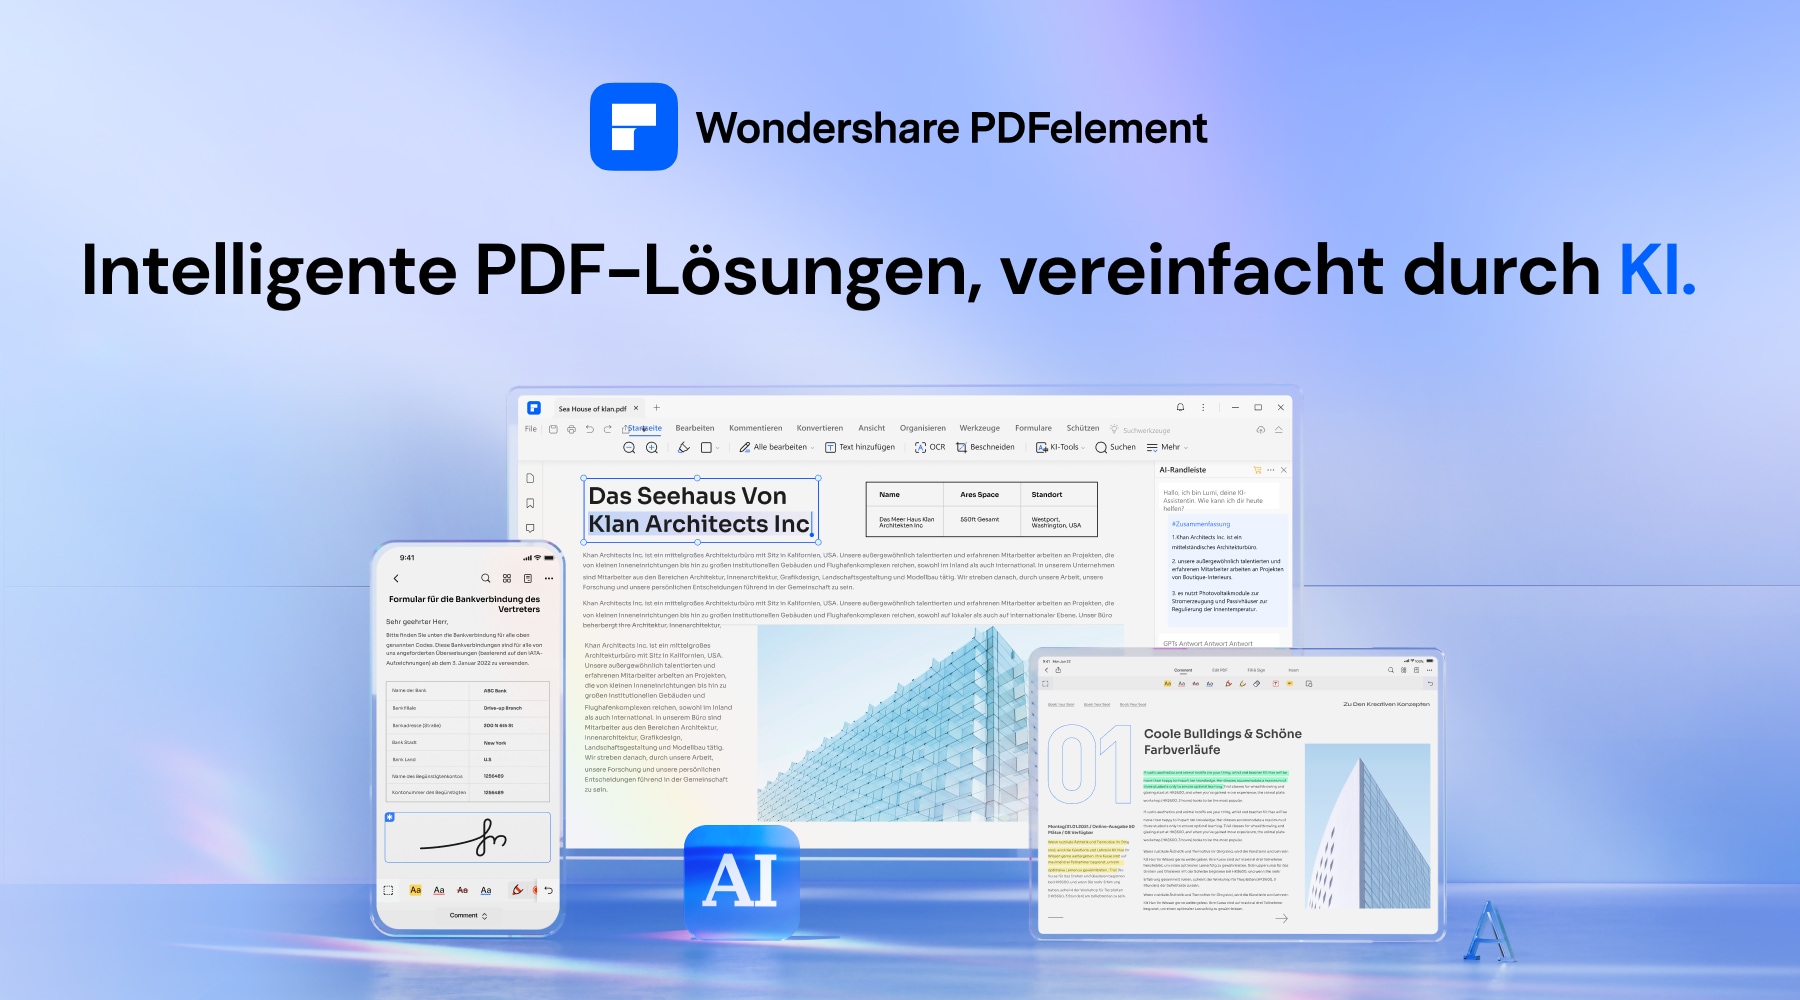 PDFelement ist ein raffiniertes Werkzeug, das Sie bei der Arbeit mit PDF-Dateien unterstützt. Es ist wie ein hilfreicher Assistent für Ihre PDFs. Mit PDFelement können Sie Ihre PDFs einfach lesen und bearbeiten, ohne viel Aufwand.